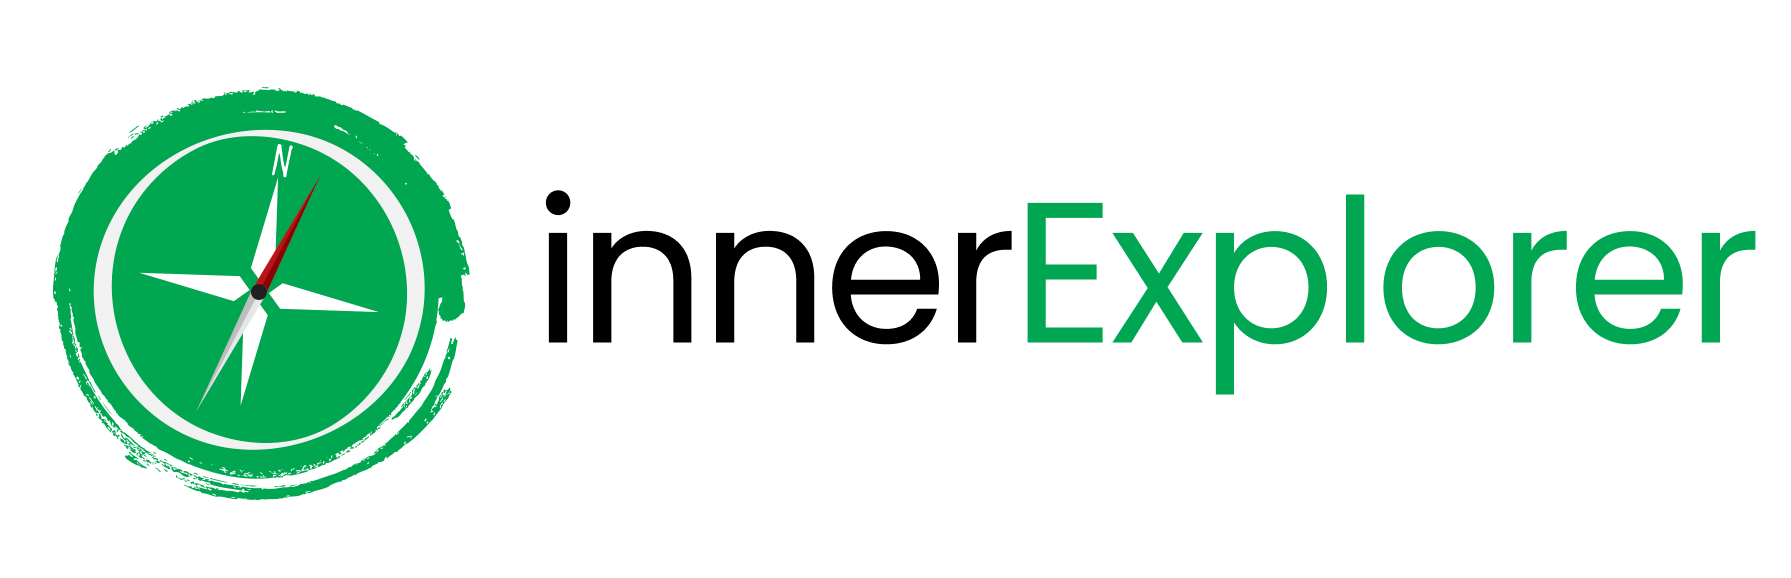 inner-explorer logo